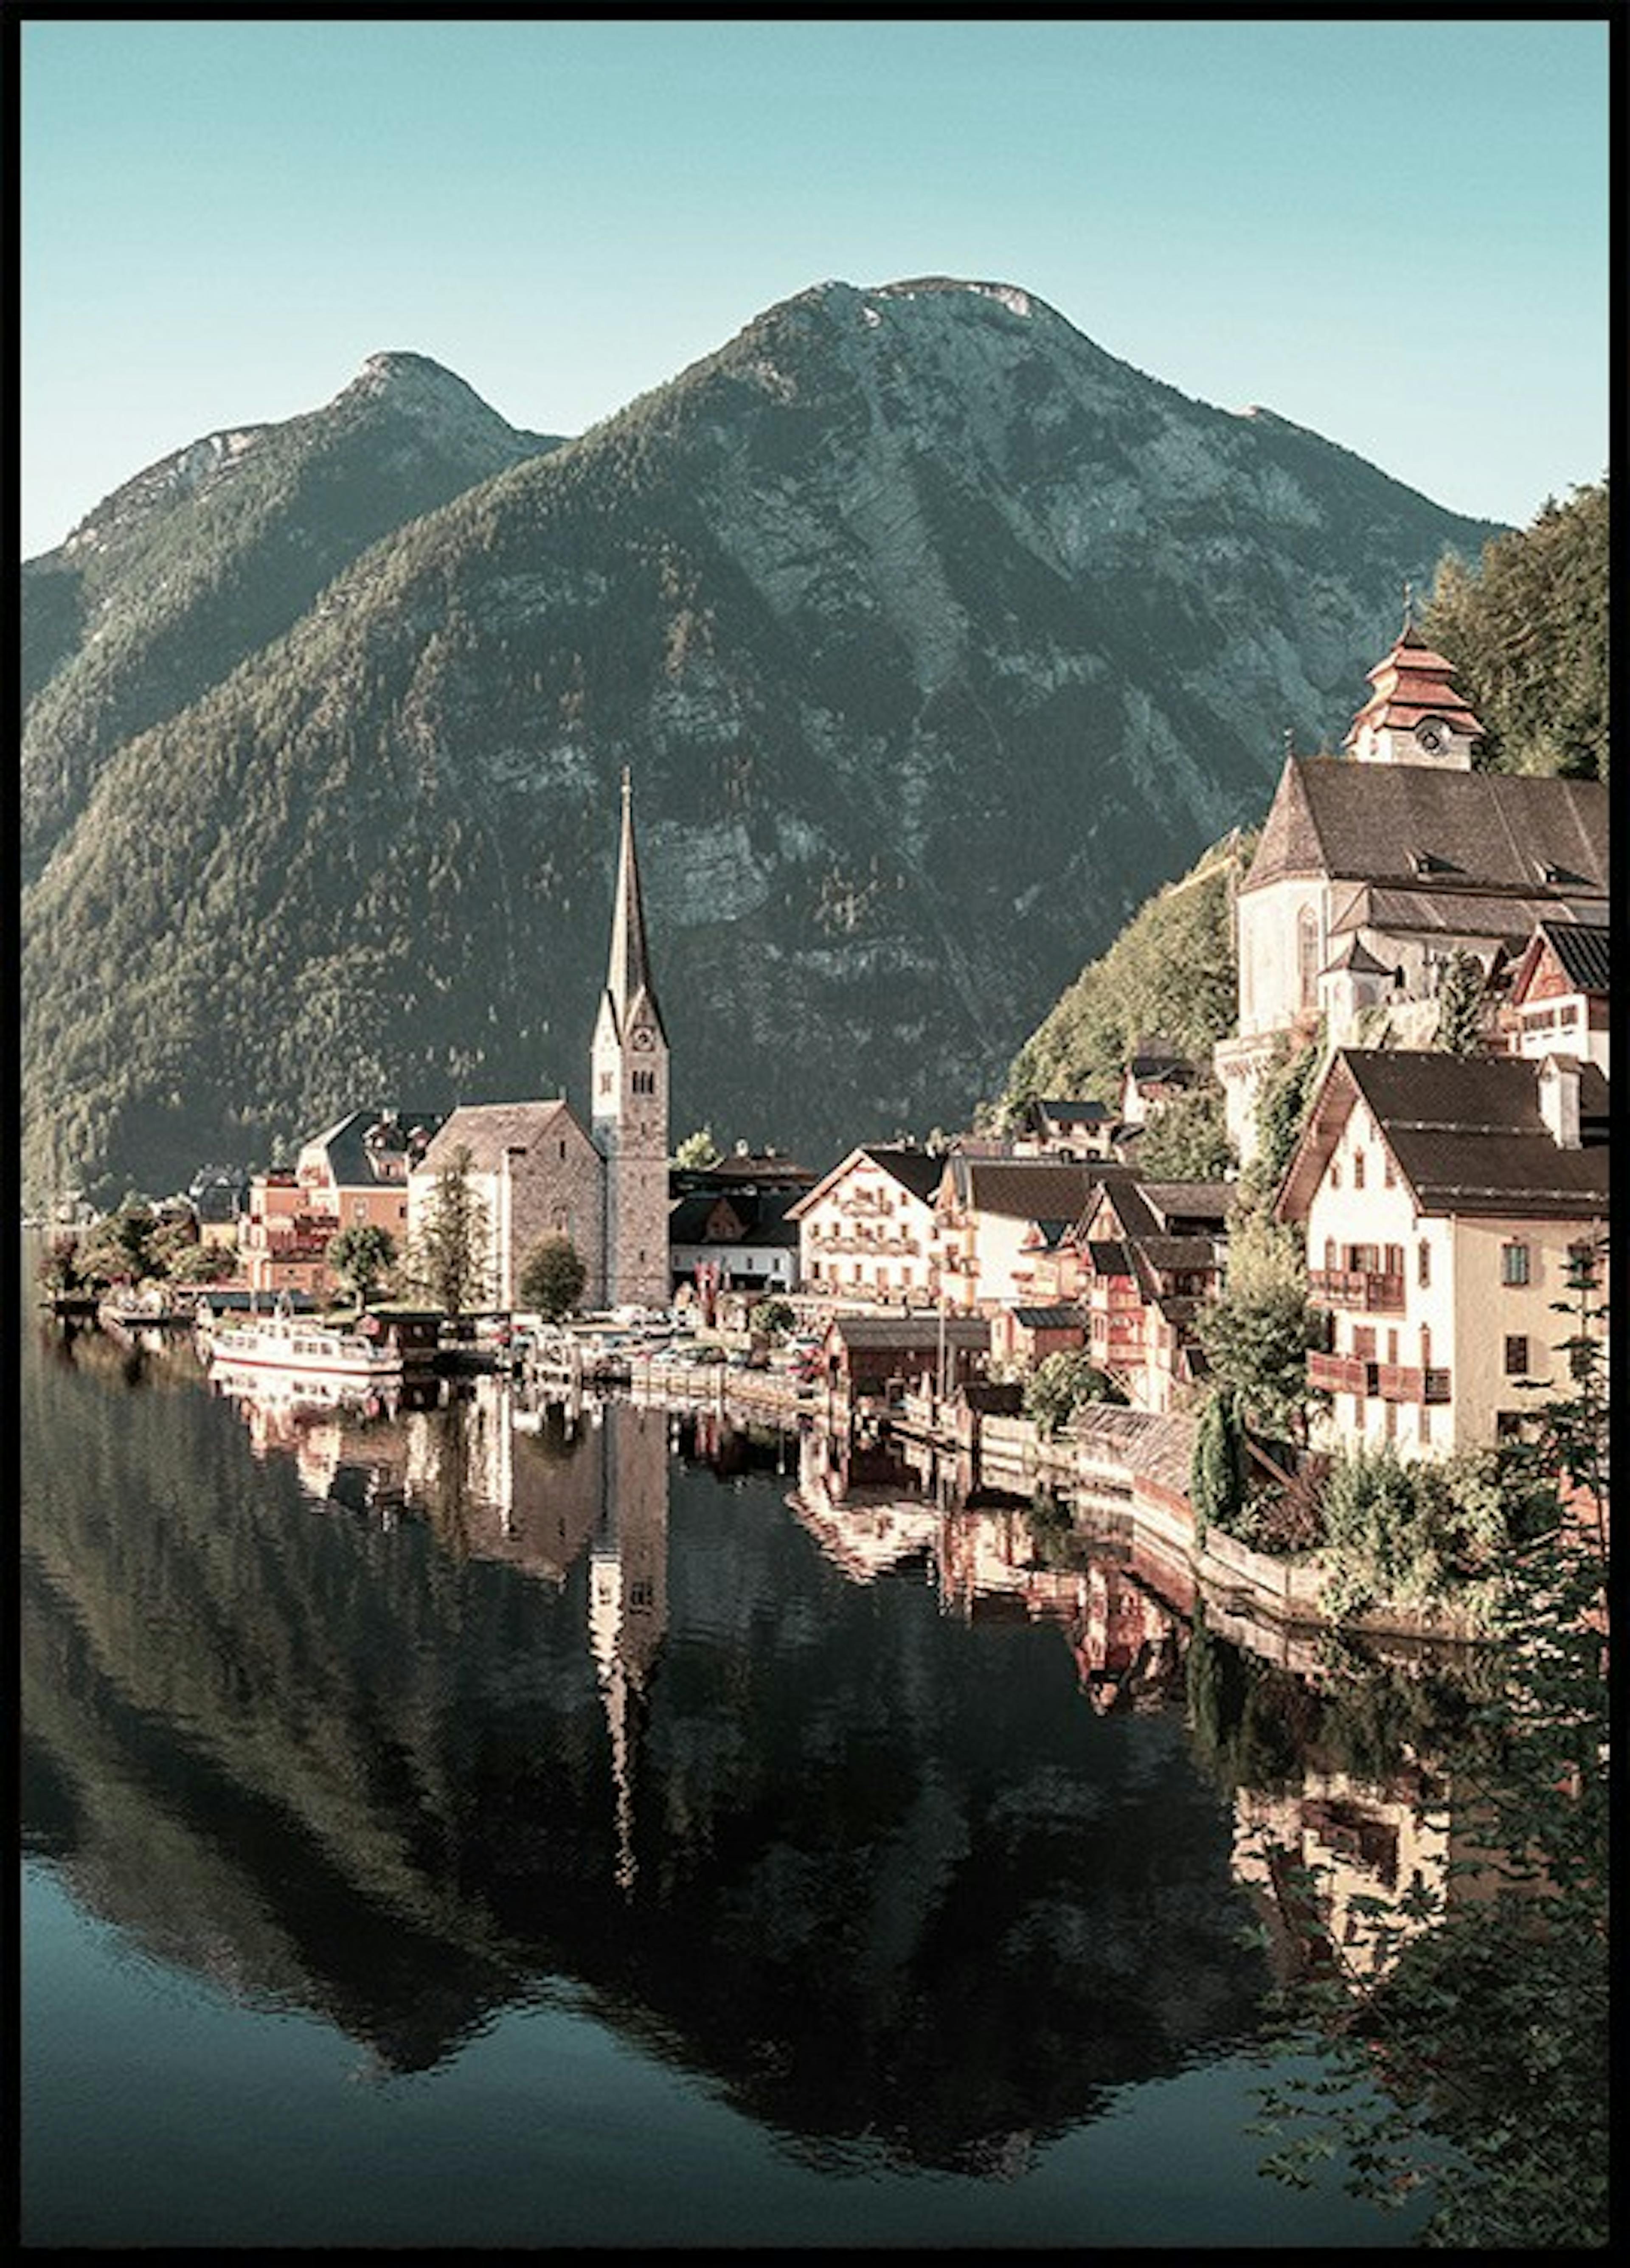 Amanecer en los Alpes Paquetes de pósters thumbnail